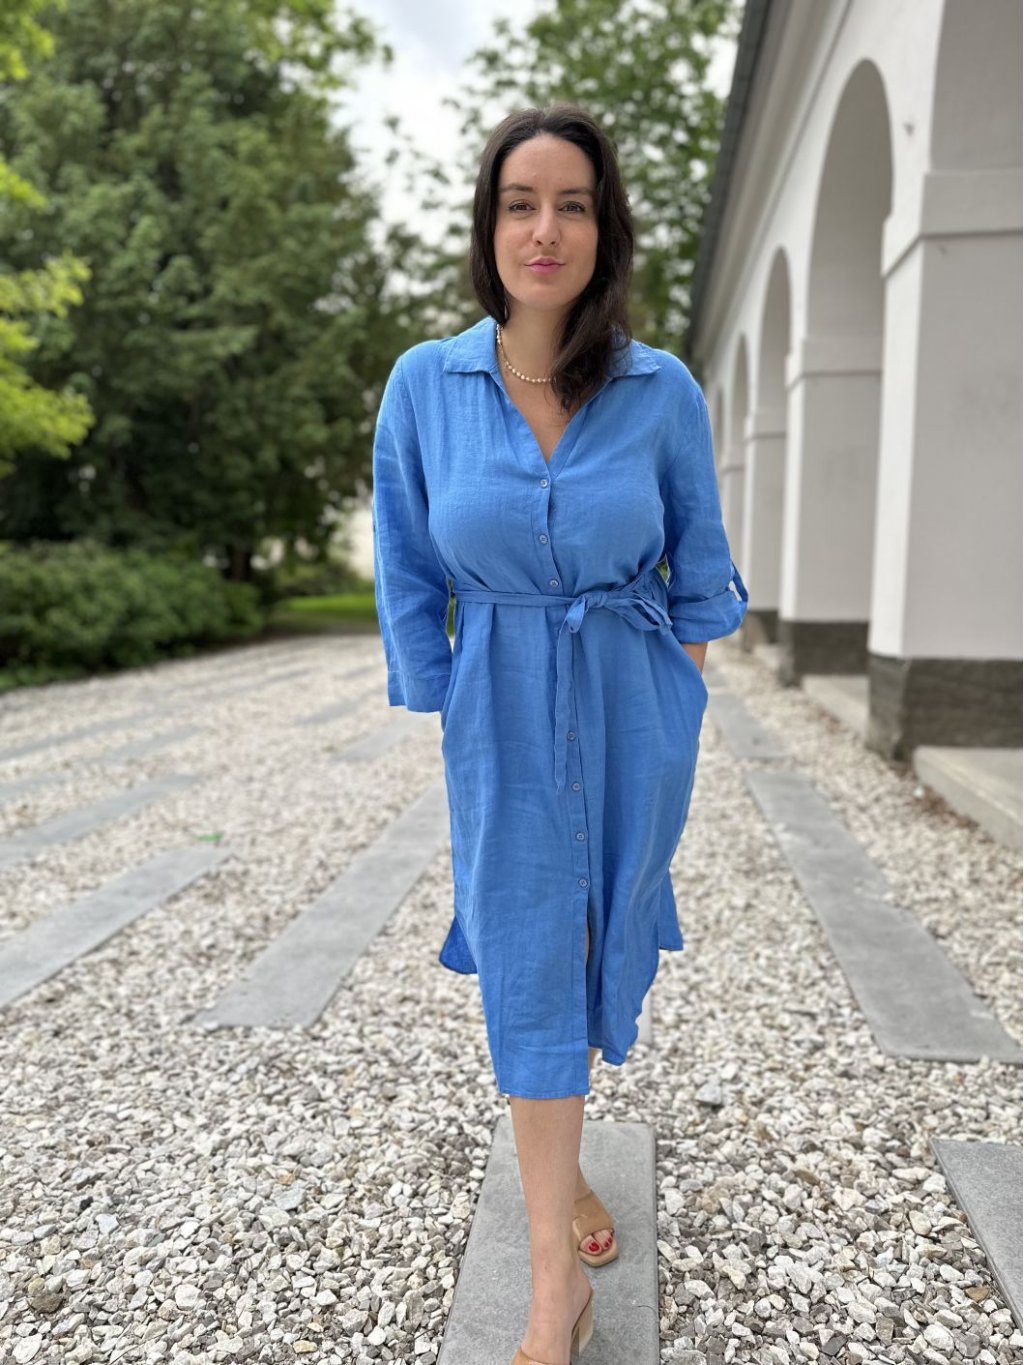 Šaty Kyra Alondra modré košilové lněné